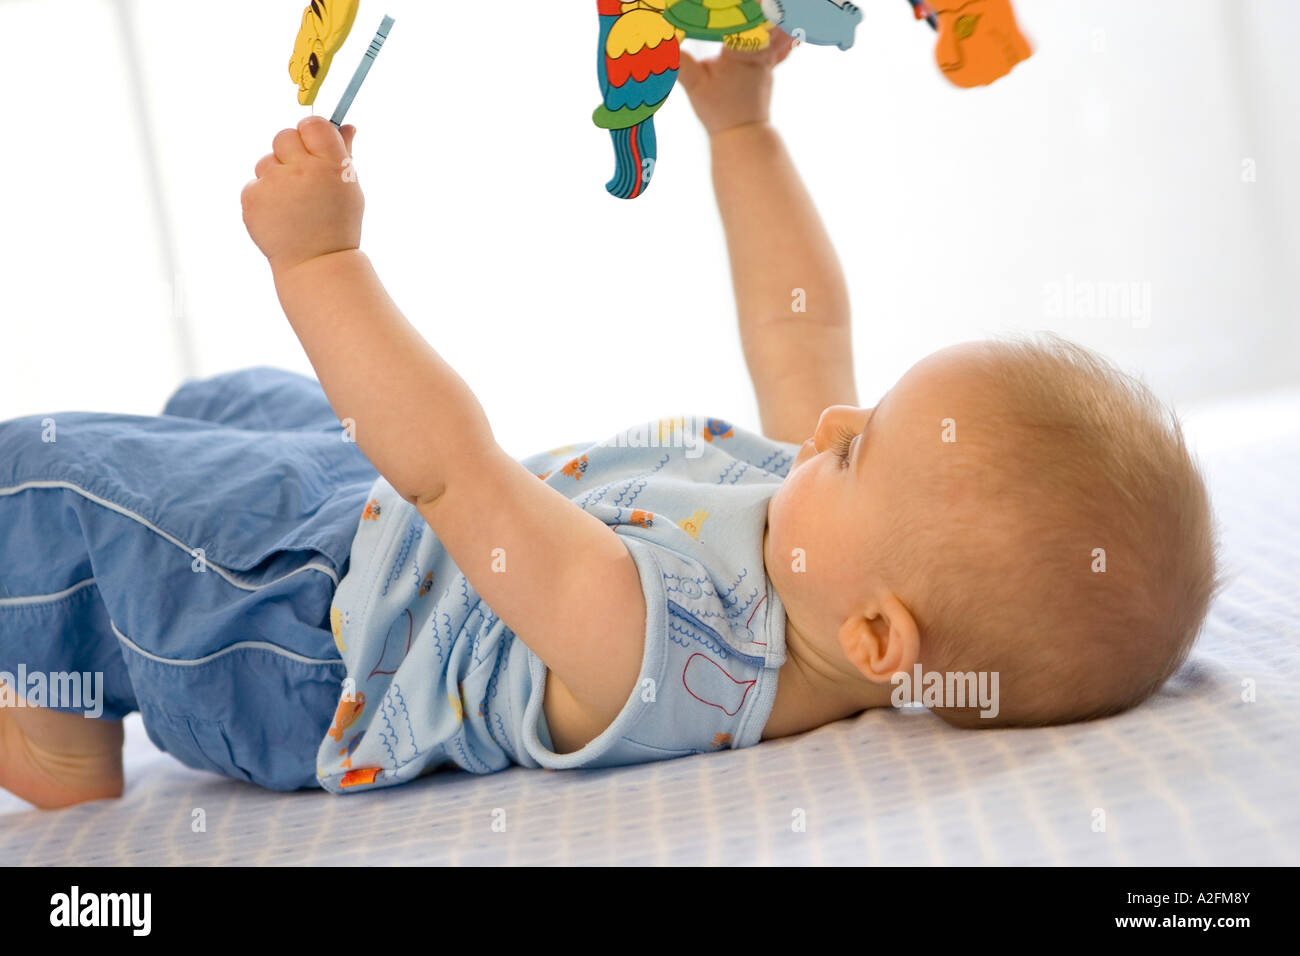 Bébé garçon (6-12 mois) allongé sur le dos, holding toys Banque D'Images